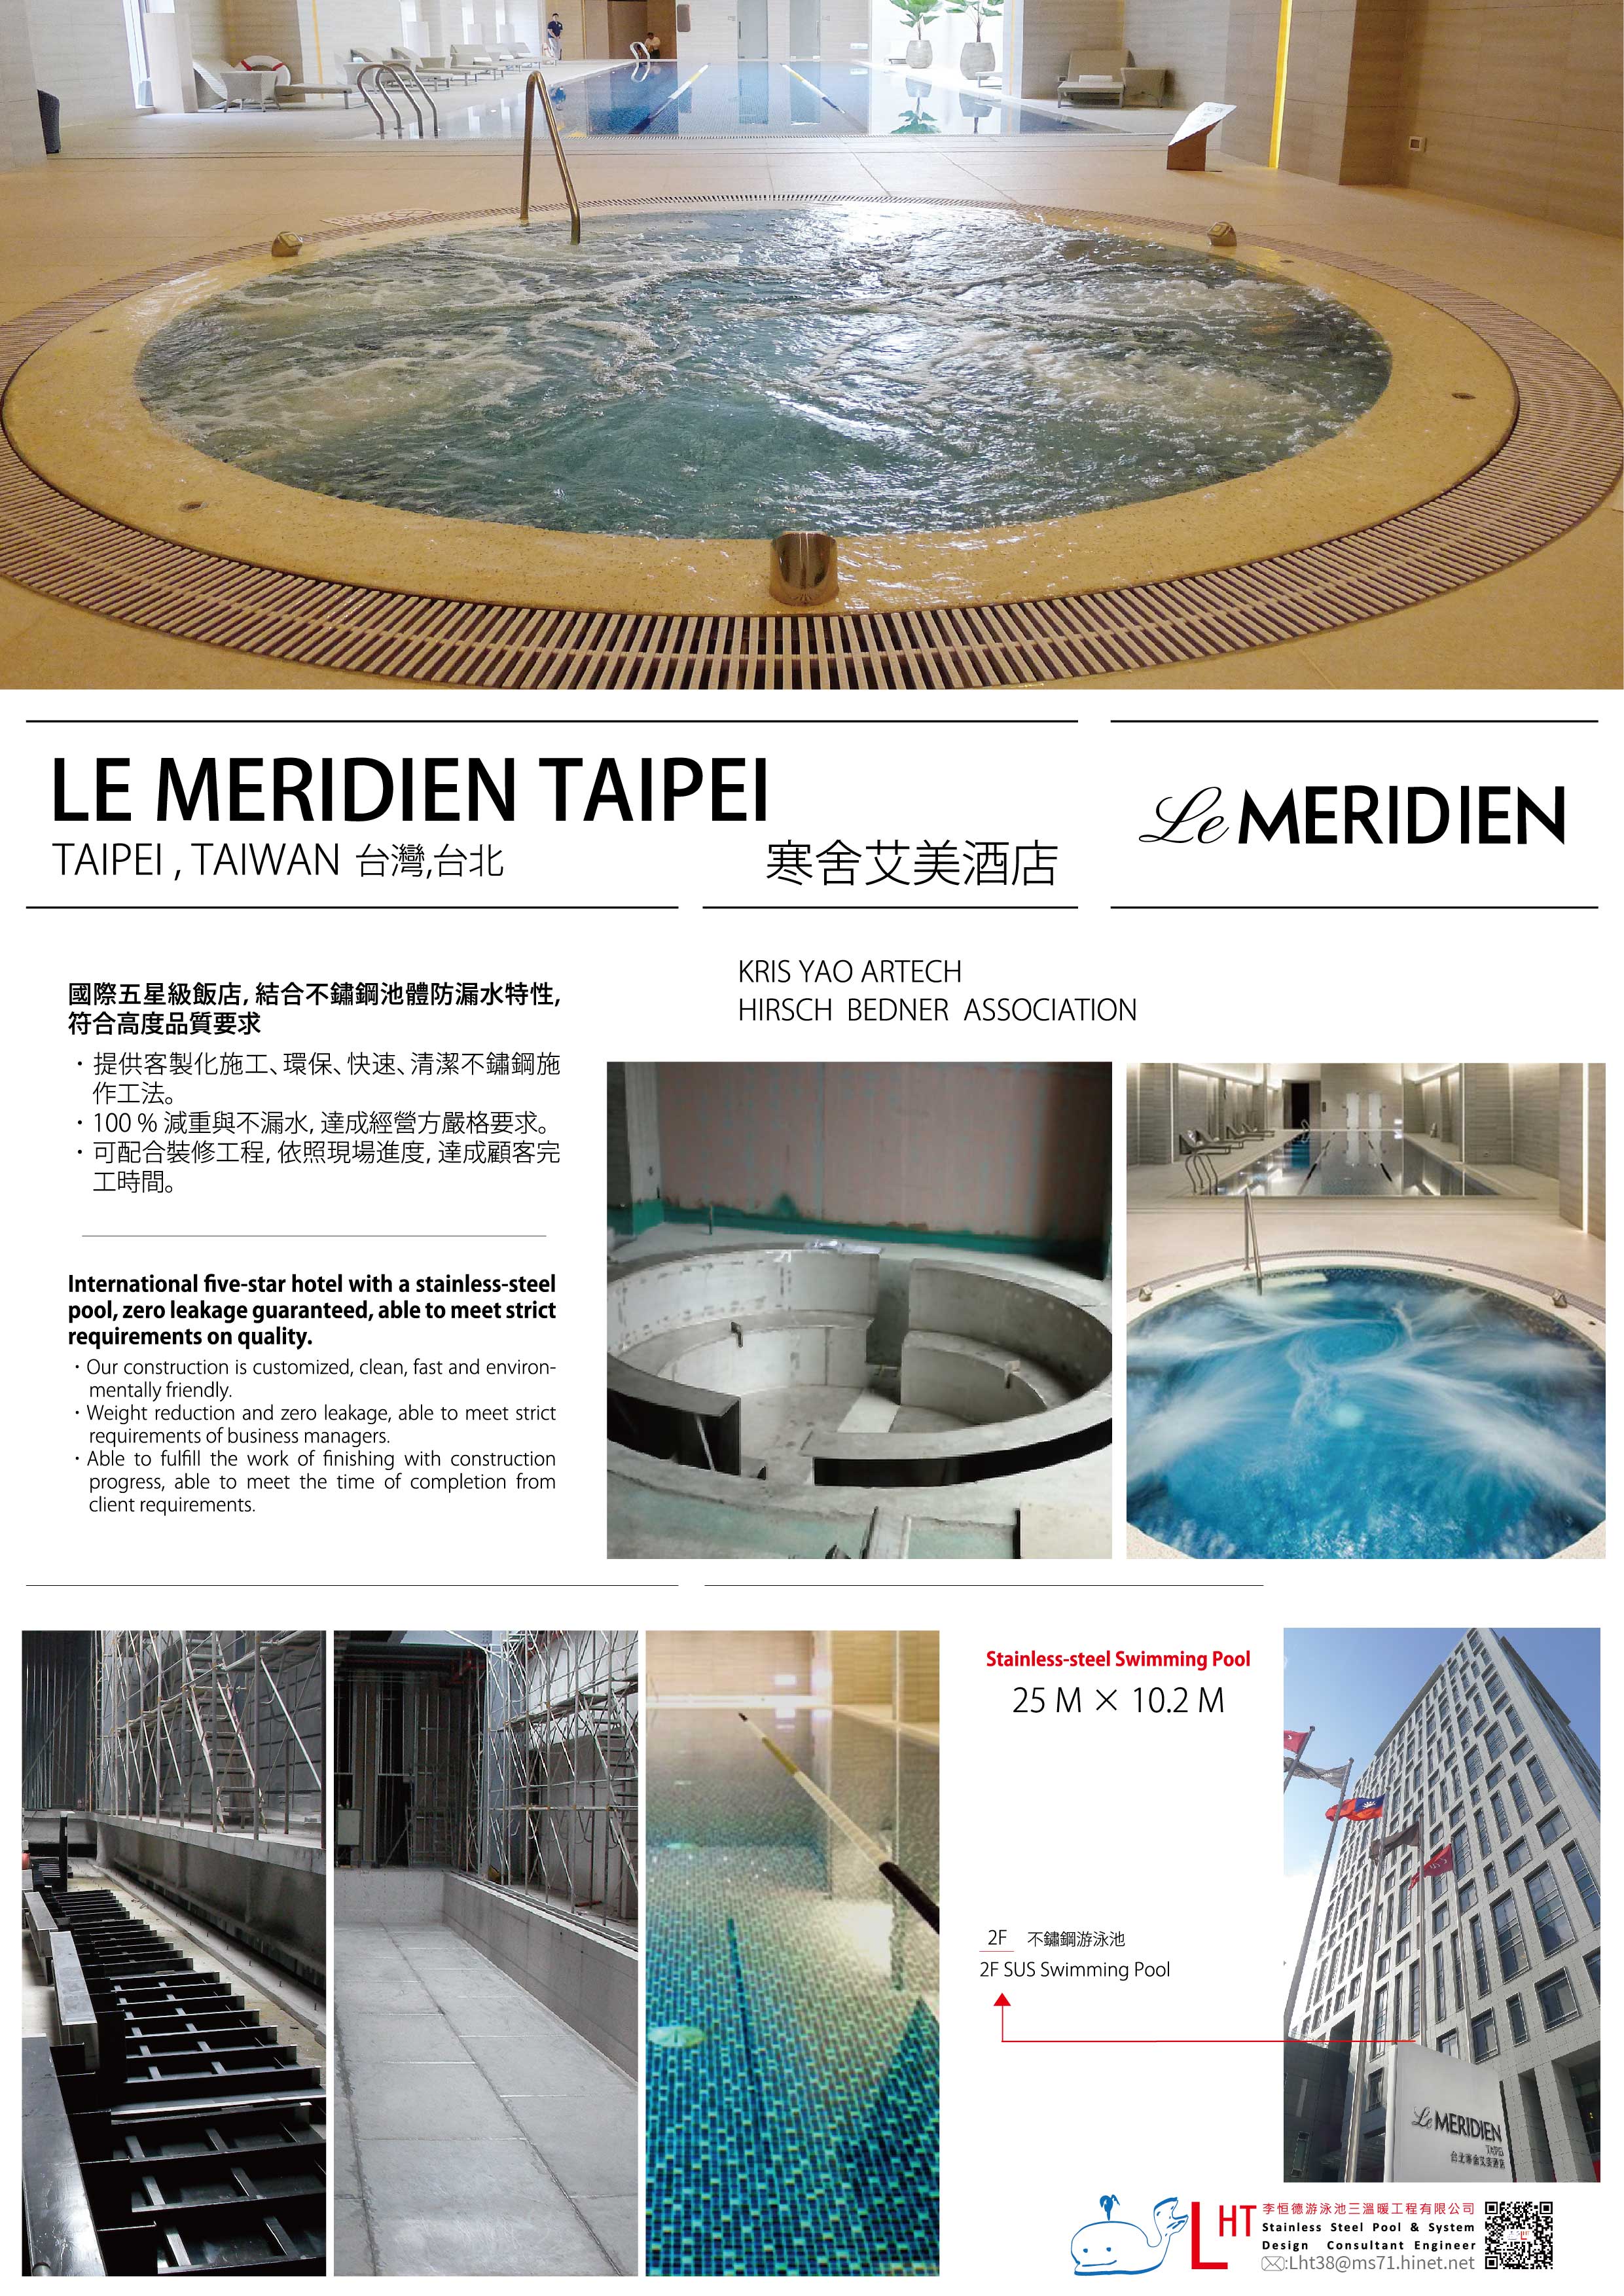 台北寒舍艾美酒店 Le Meridien Taipei